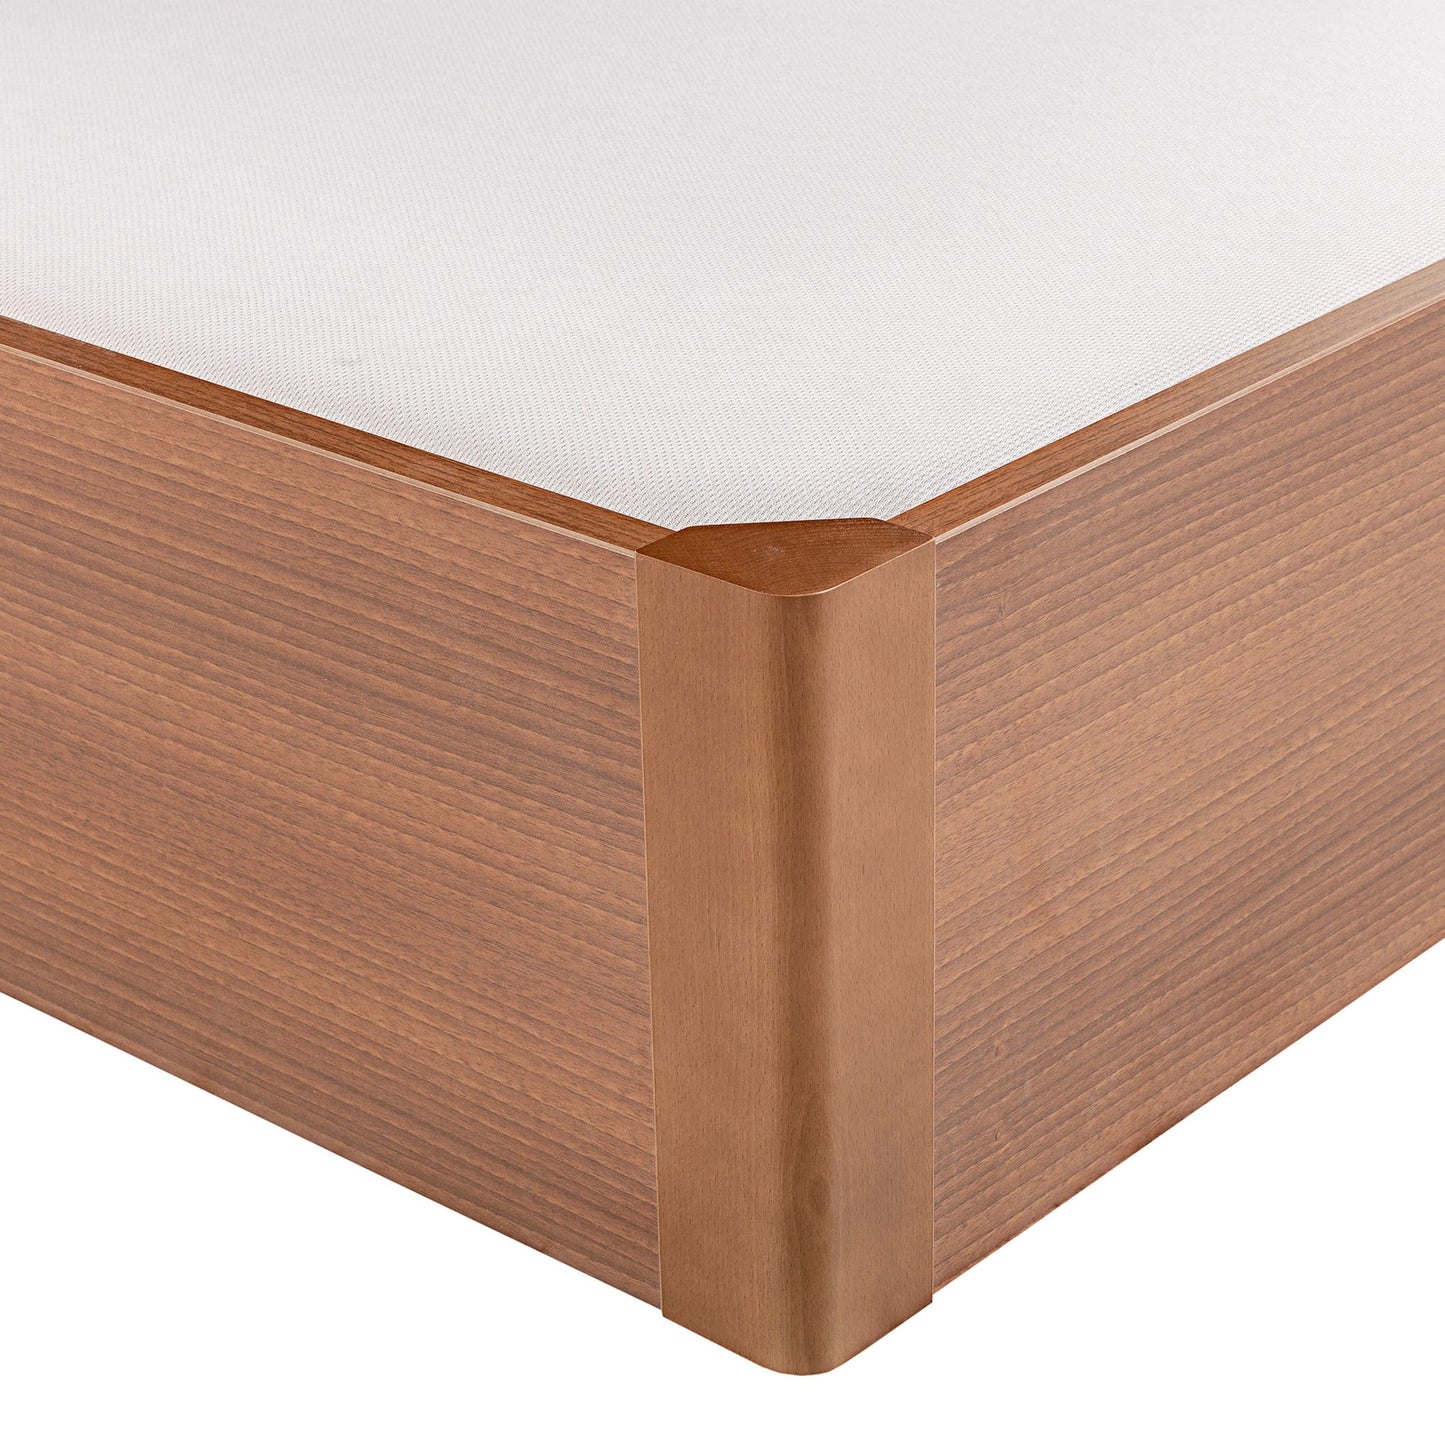 Canapé abatible de madera tapa única de color cerezo - DESIGN - 135x182